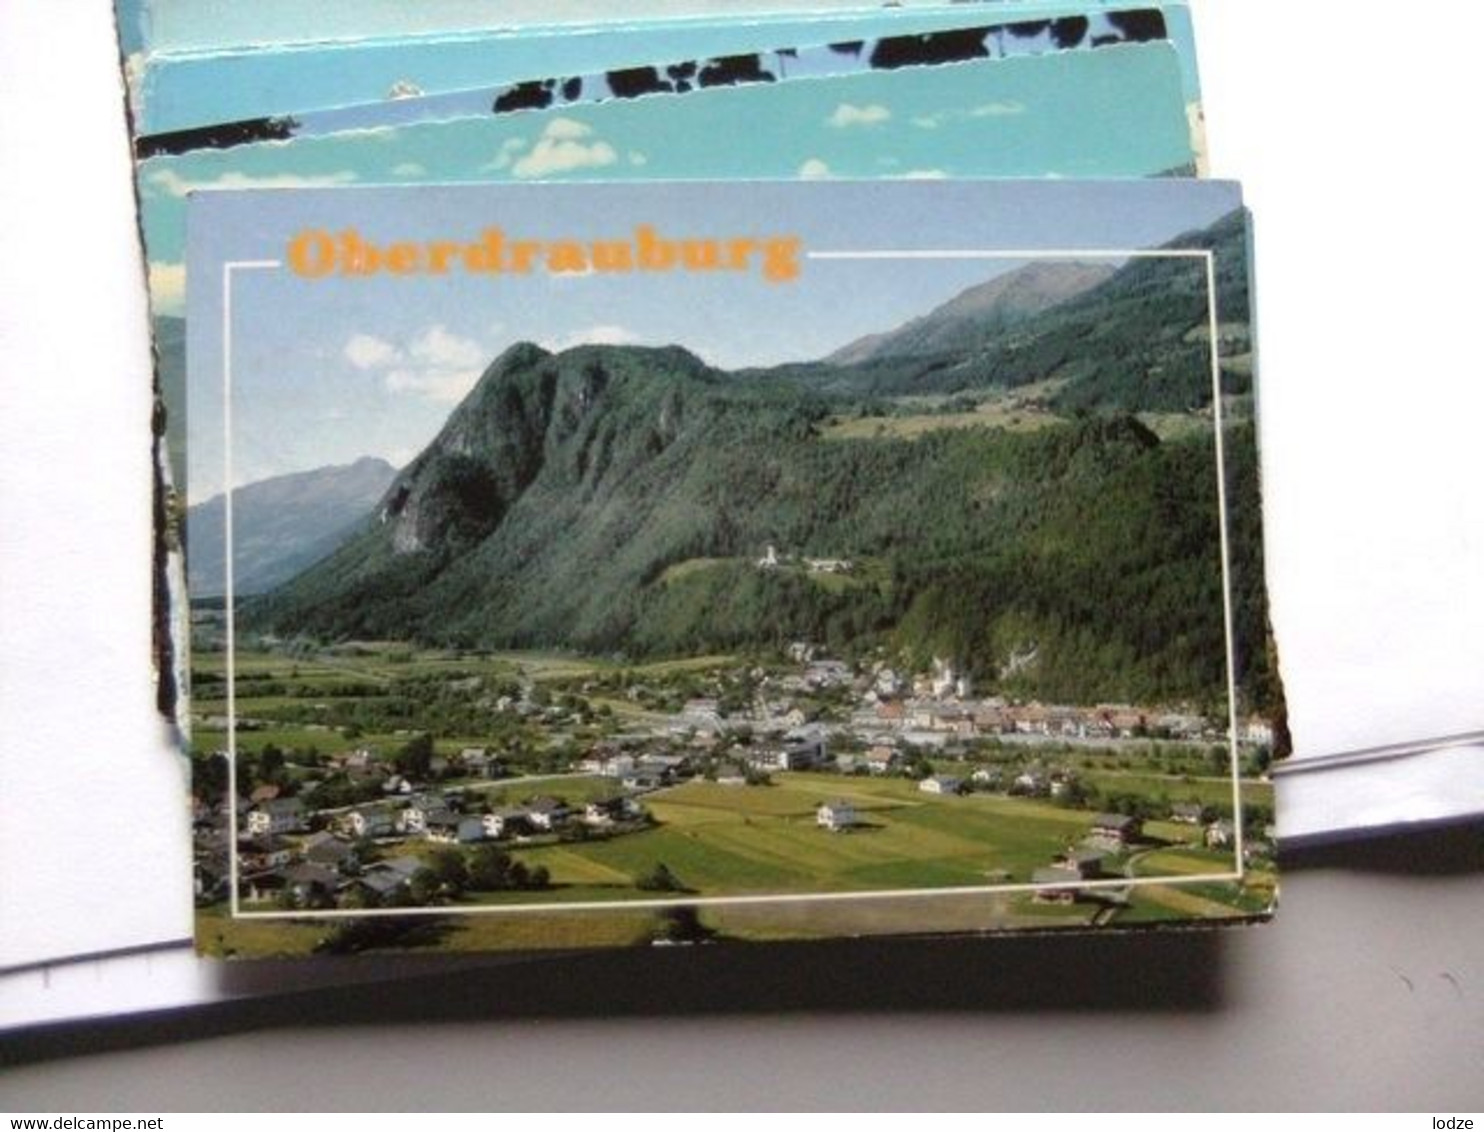 Oostenrijk Österreich Kärnten Oberdrauburg - Oberdrauburg